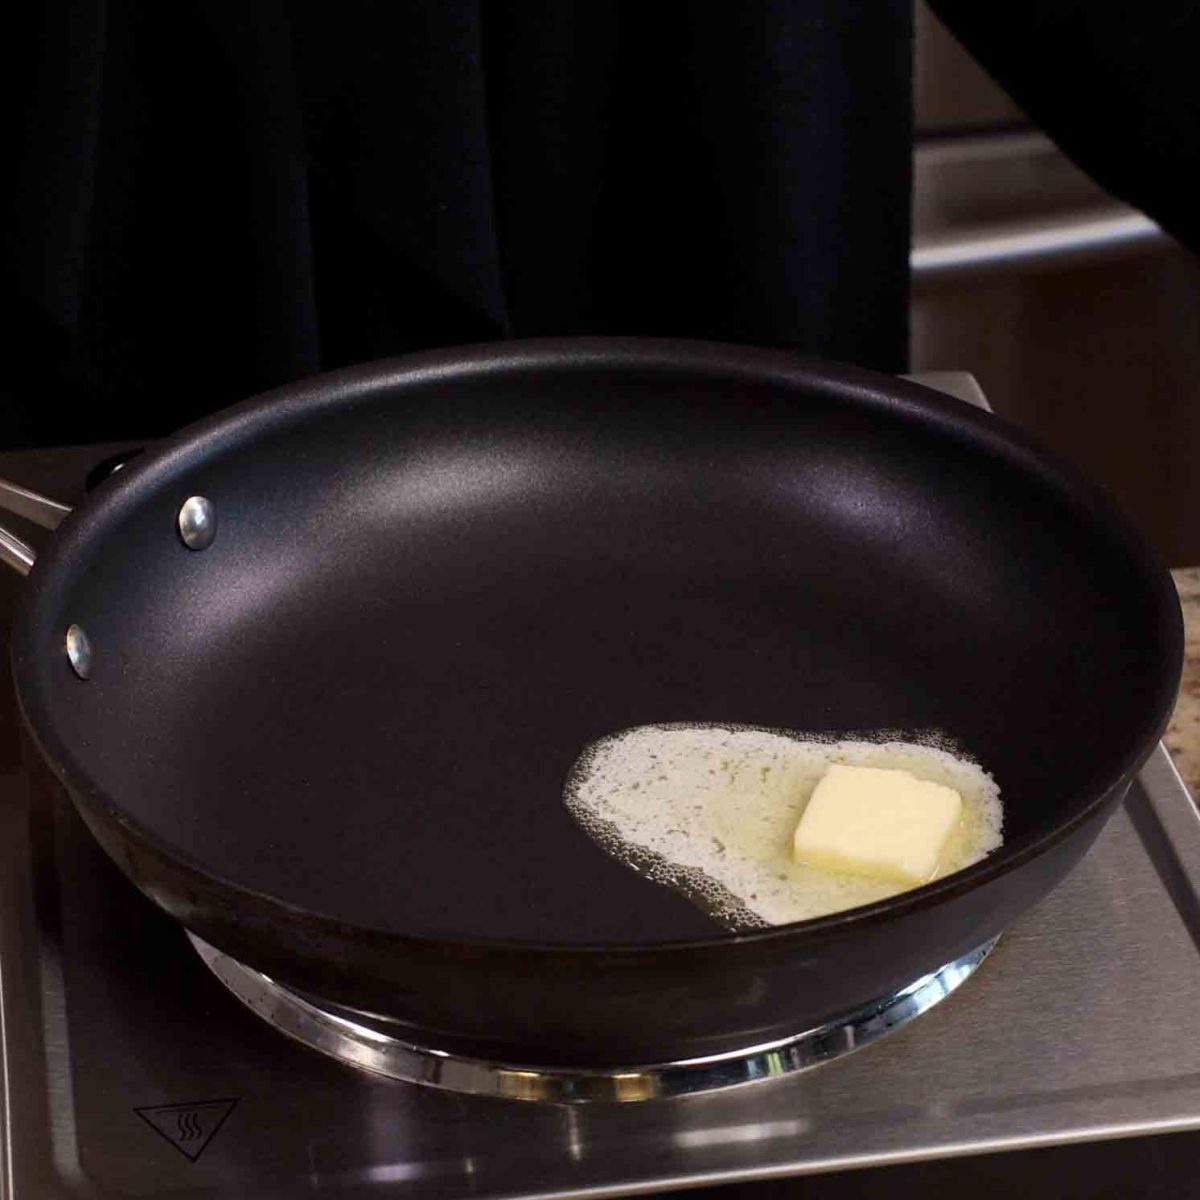 butter melting in a saucepan.